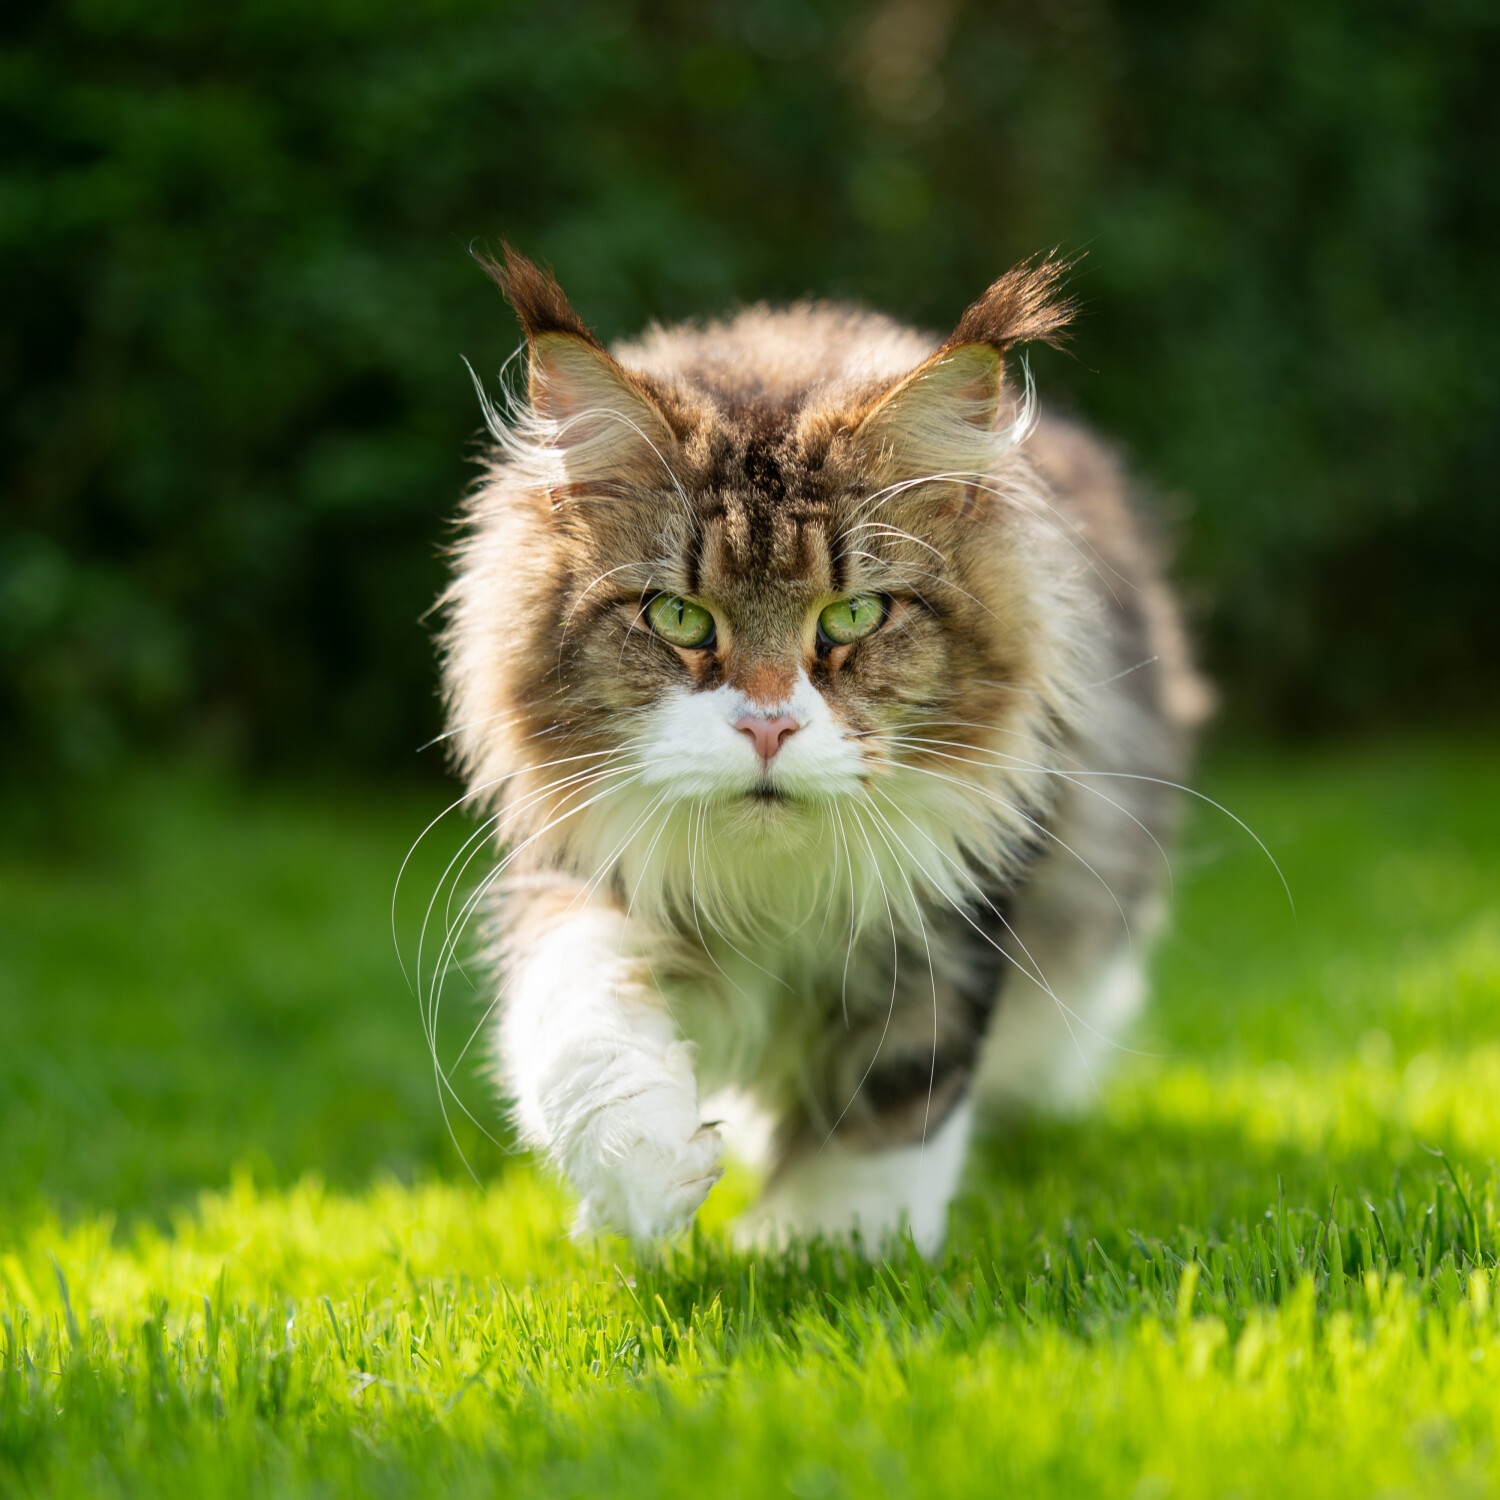 Katzen aus dem Garten vertreiben: tierfreundliche Tipps, um Katzen mit Pflanzen zu vertreiben